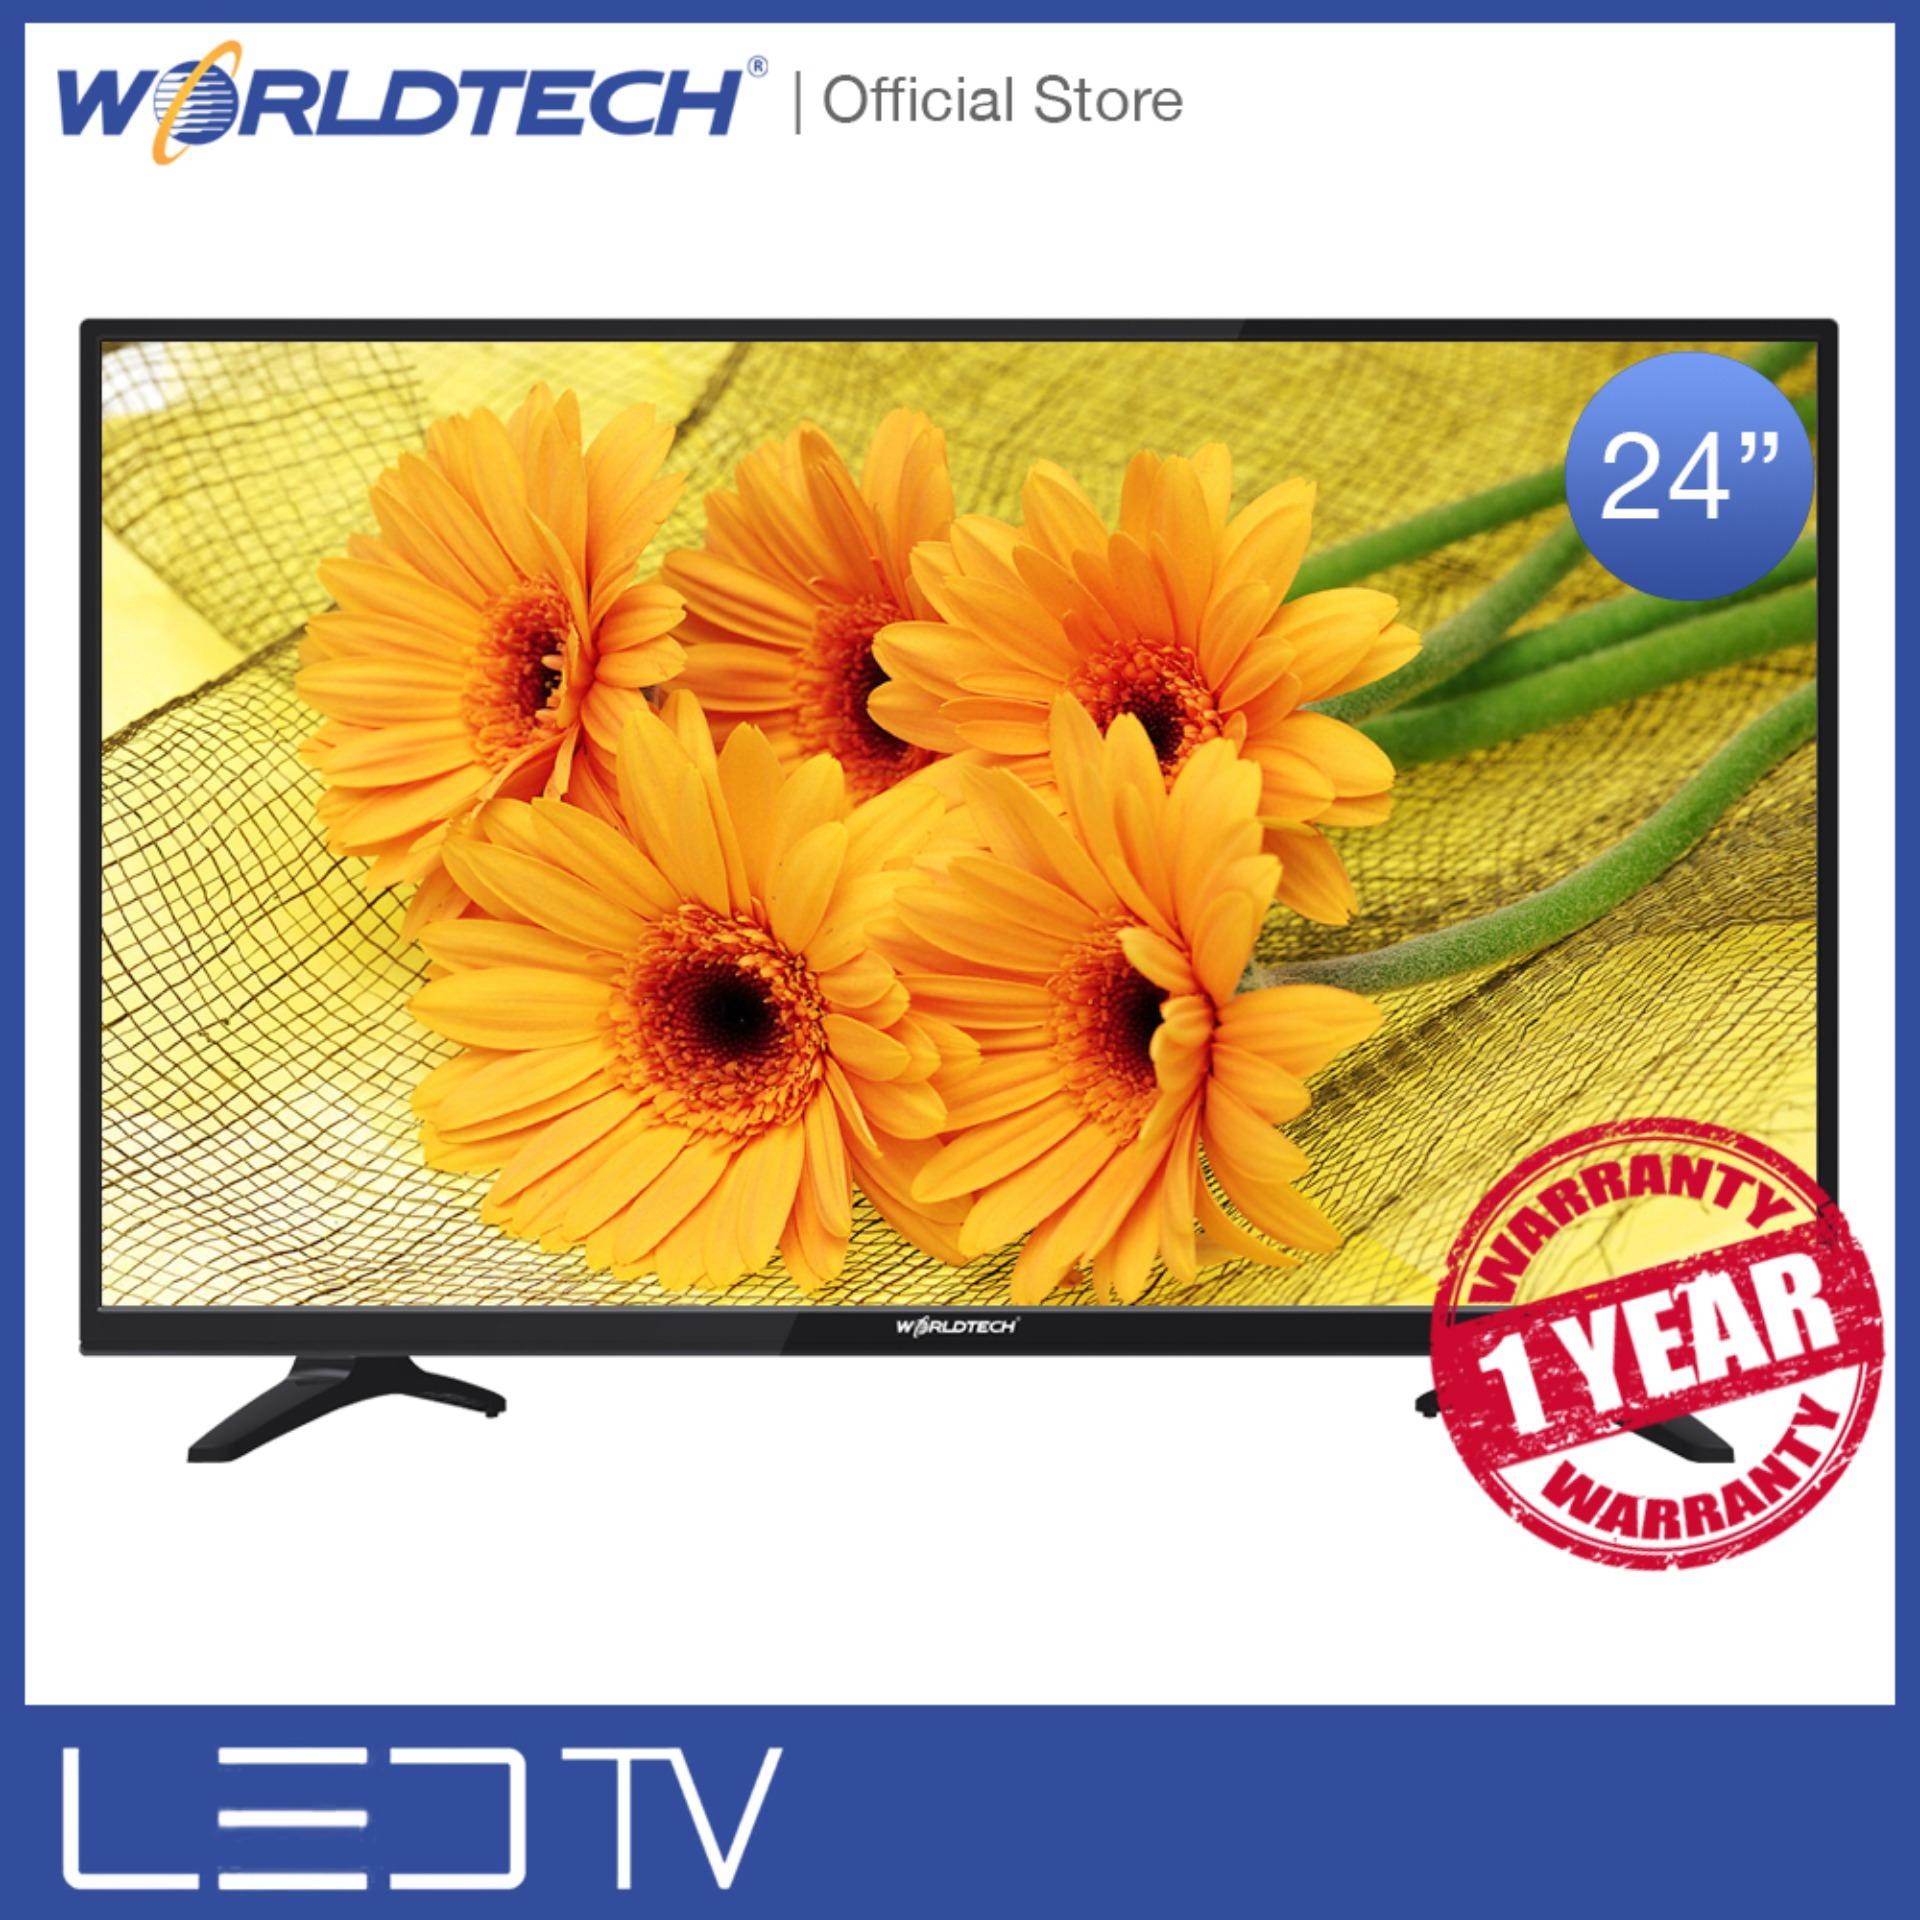 LEDTV (แอลอีดีทีวี) Worldtech ขนาด 24 นิ้ว รุ่น WT-LED2401